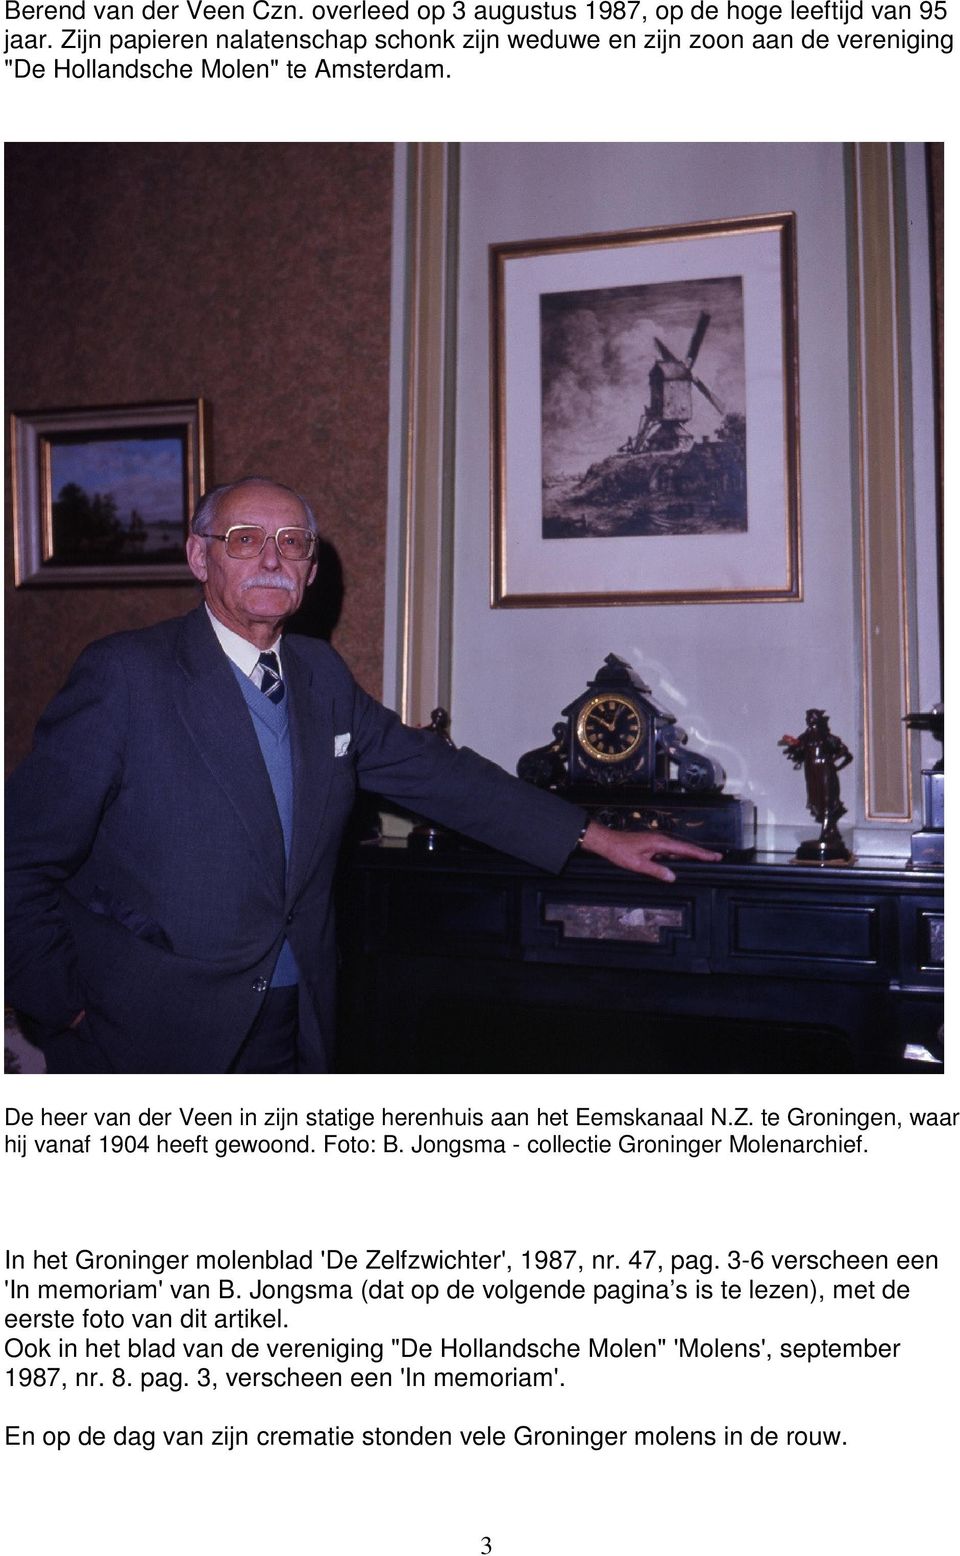 Foto: B. Jongsma - collectie Groninger Molenarchief. In het Groninger molenblad 'De Zelfzwichter', 1987, nr. 47, pag. 3-6 verscheen een 'In memoriam' van B.